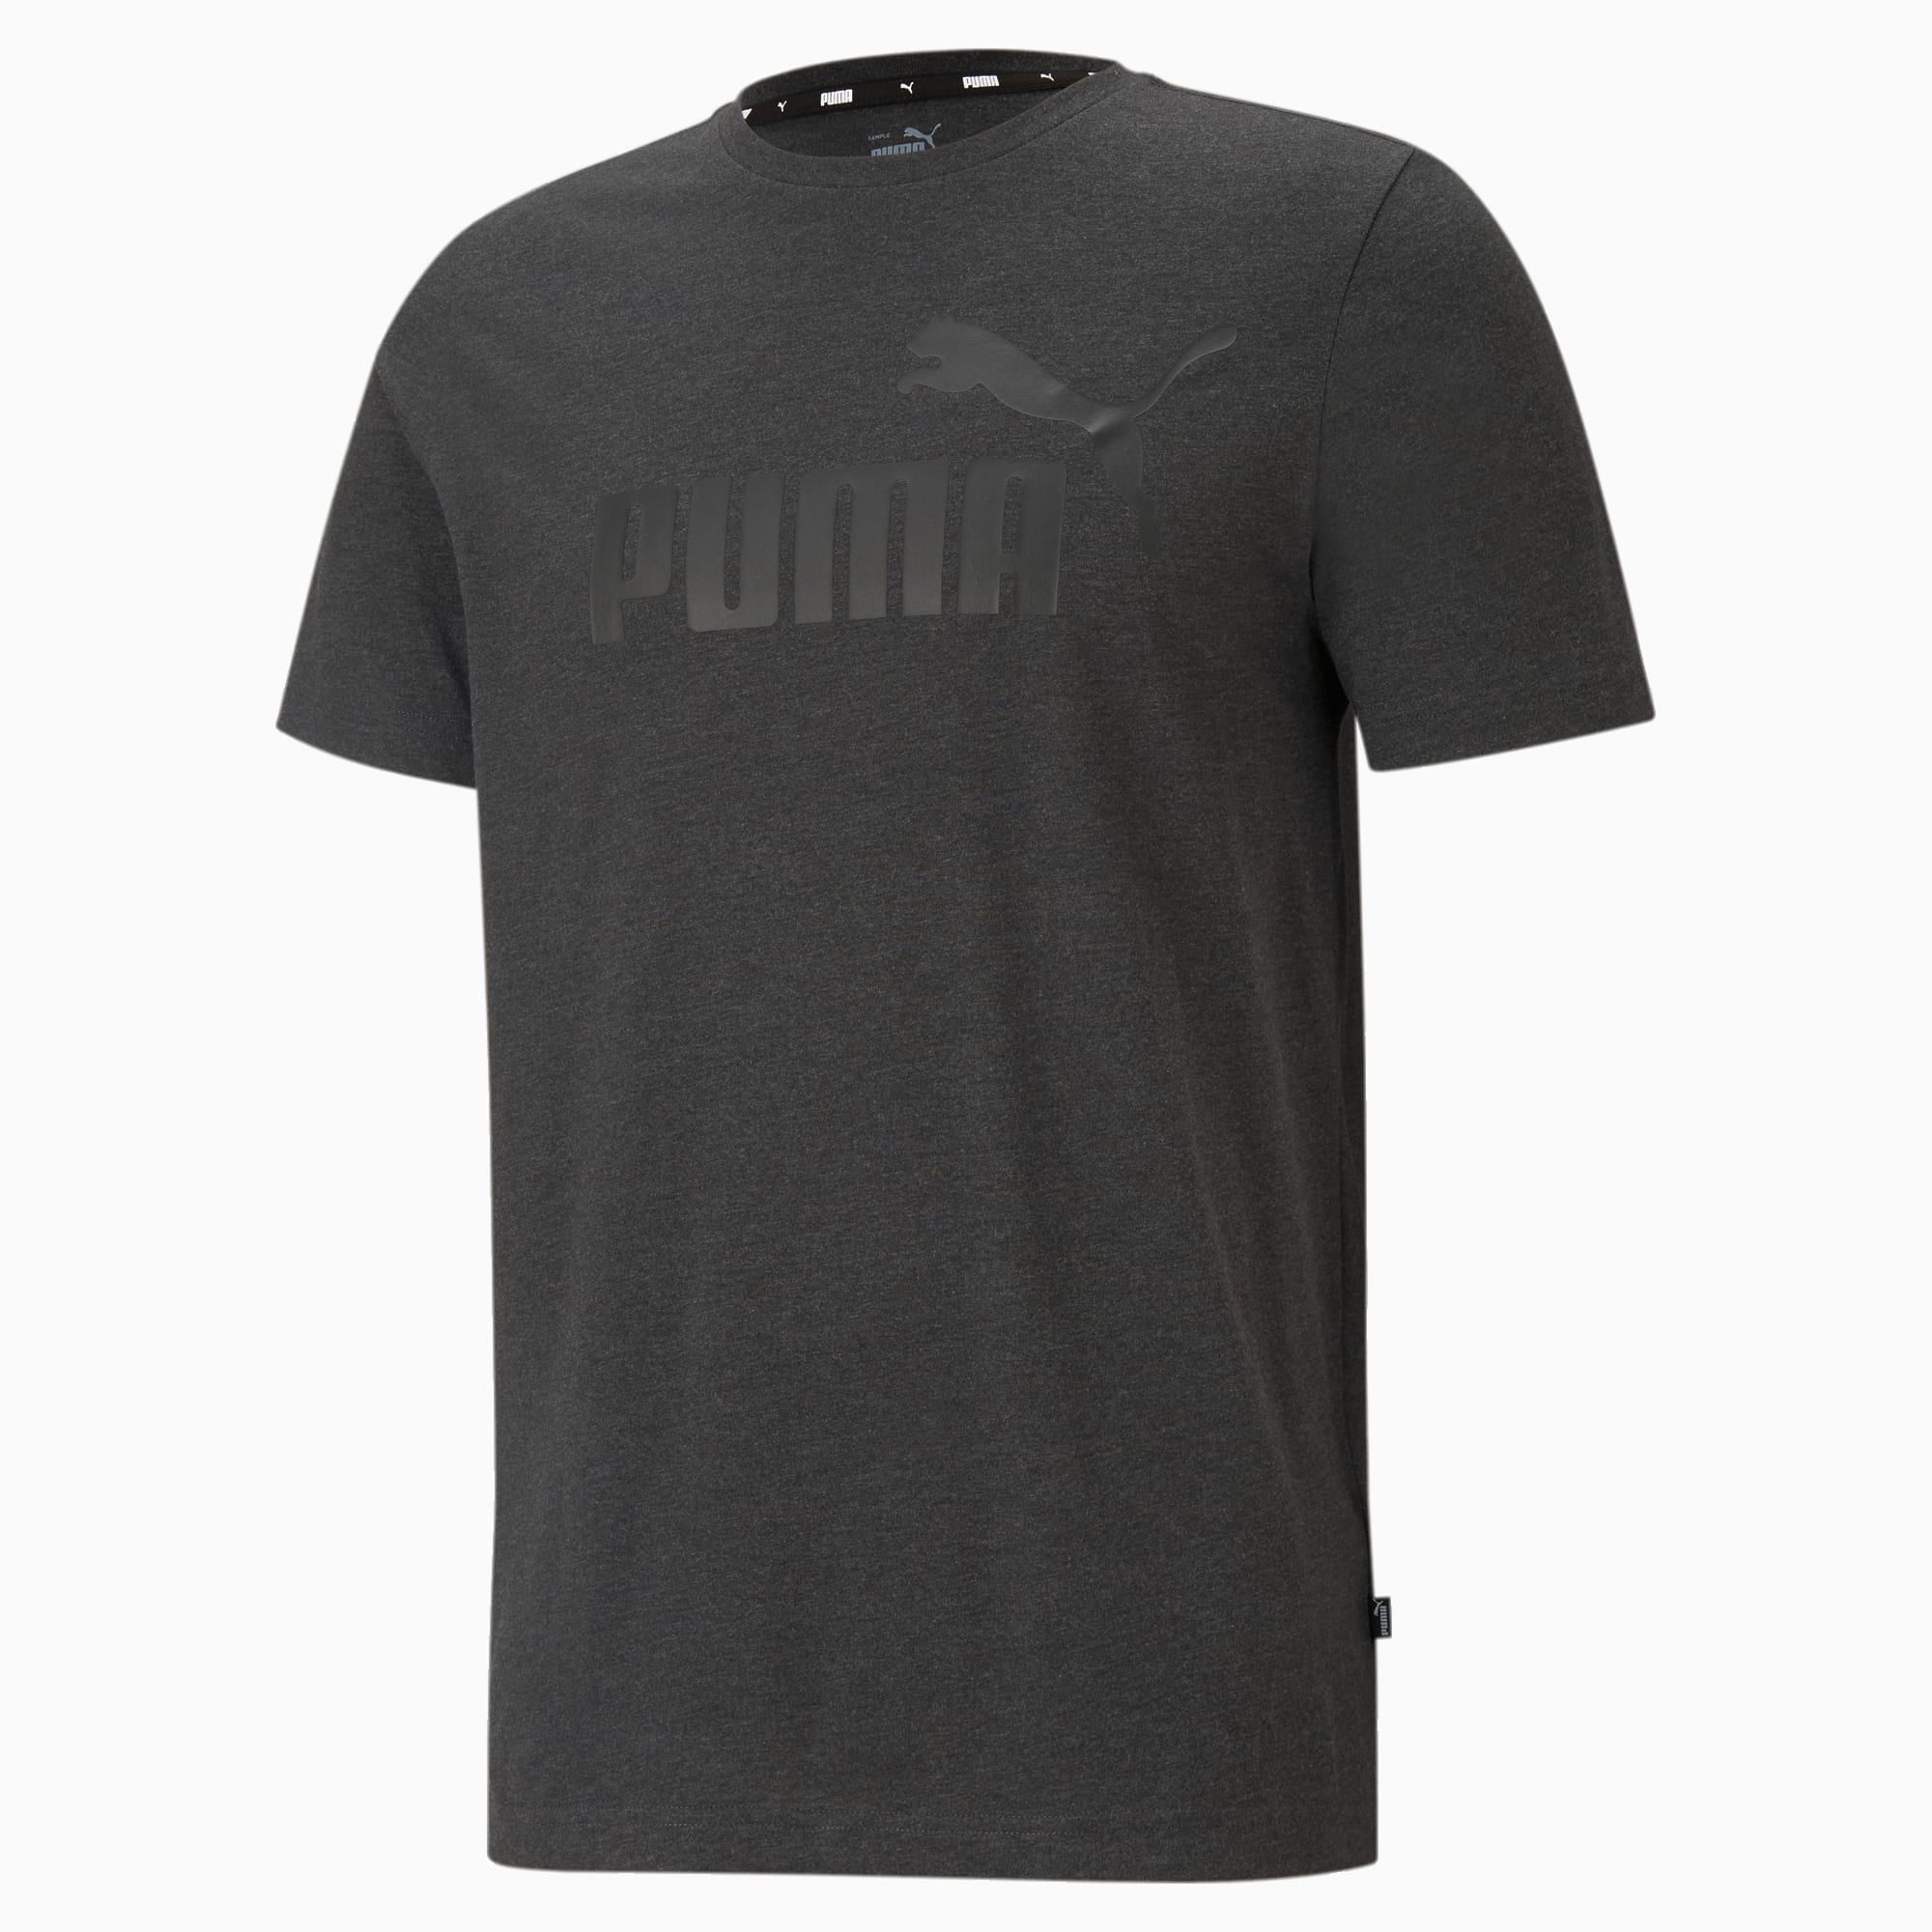 PUMA Essentials Heather Men's T-Shirt, Dark Grey Heather, Size M, Clothing